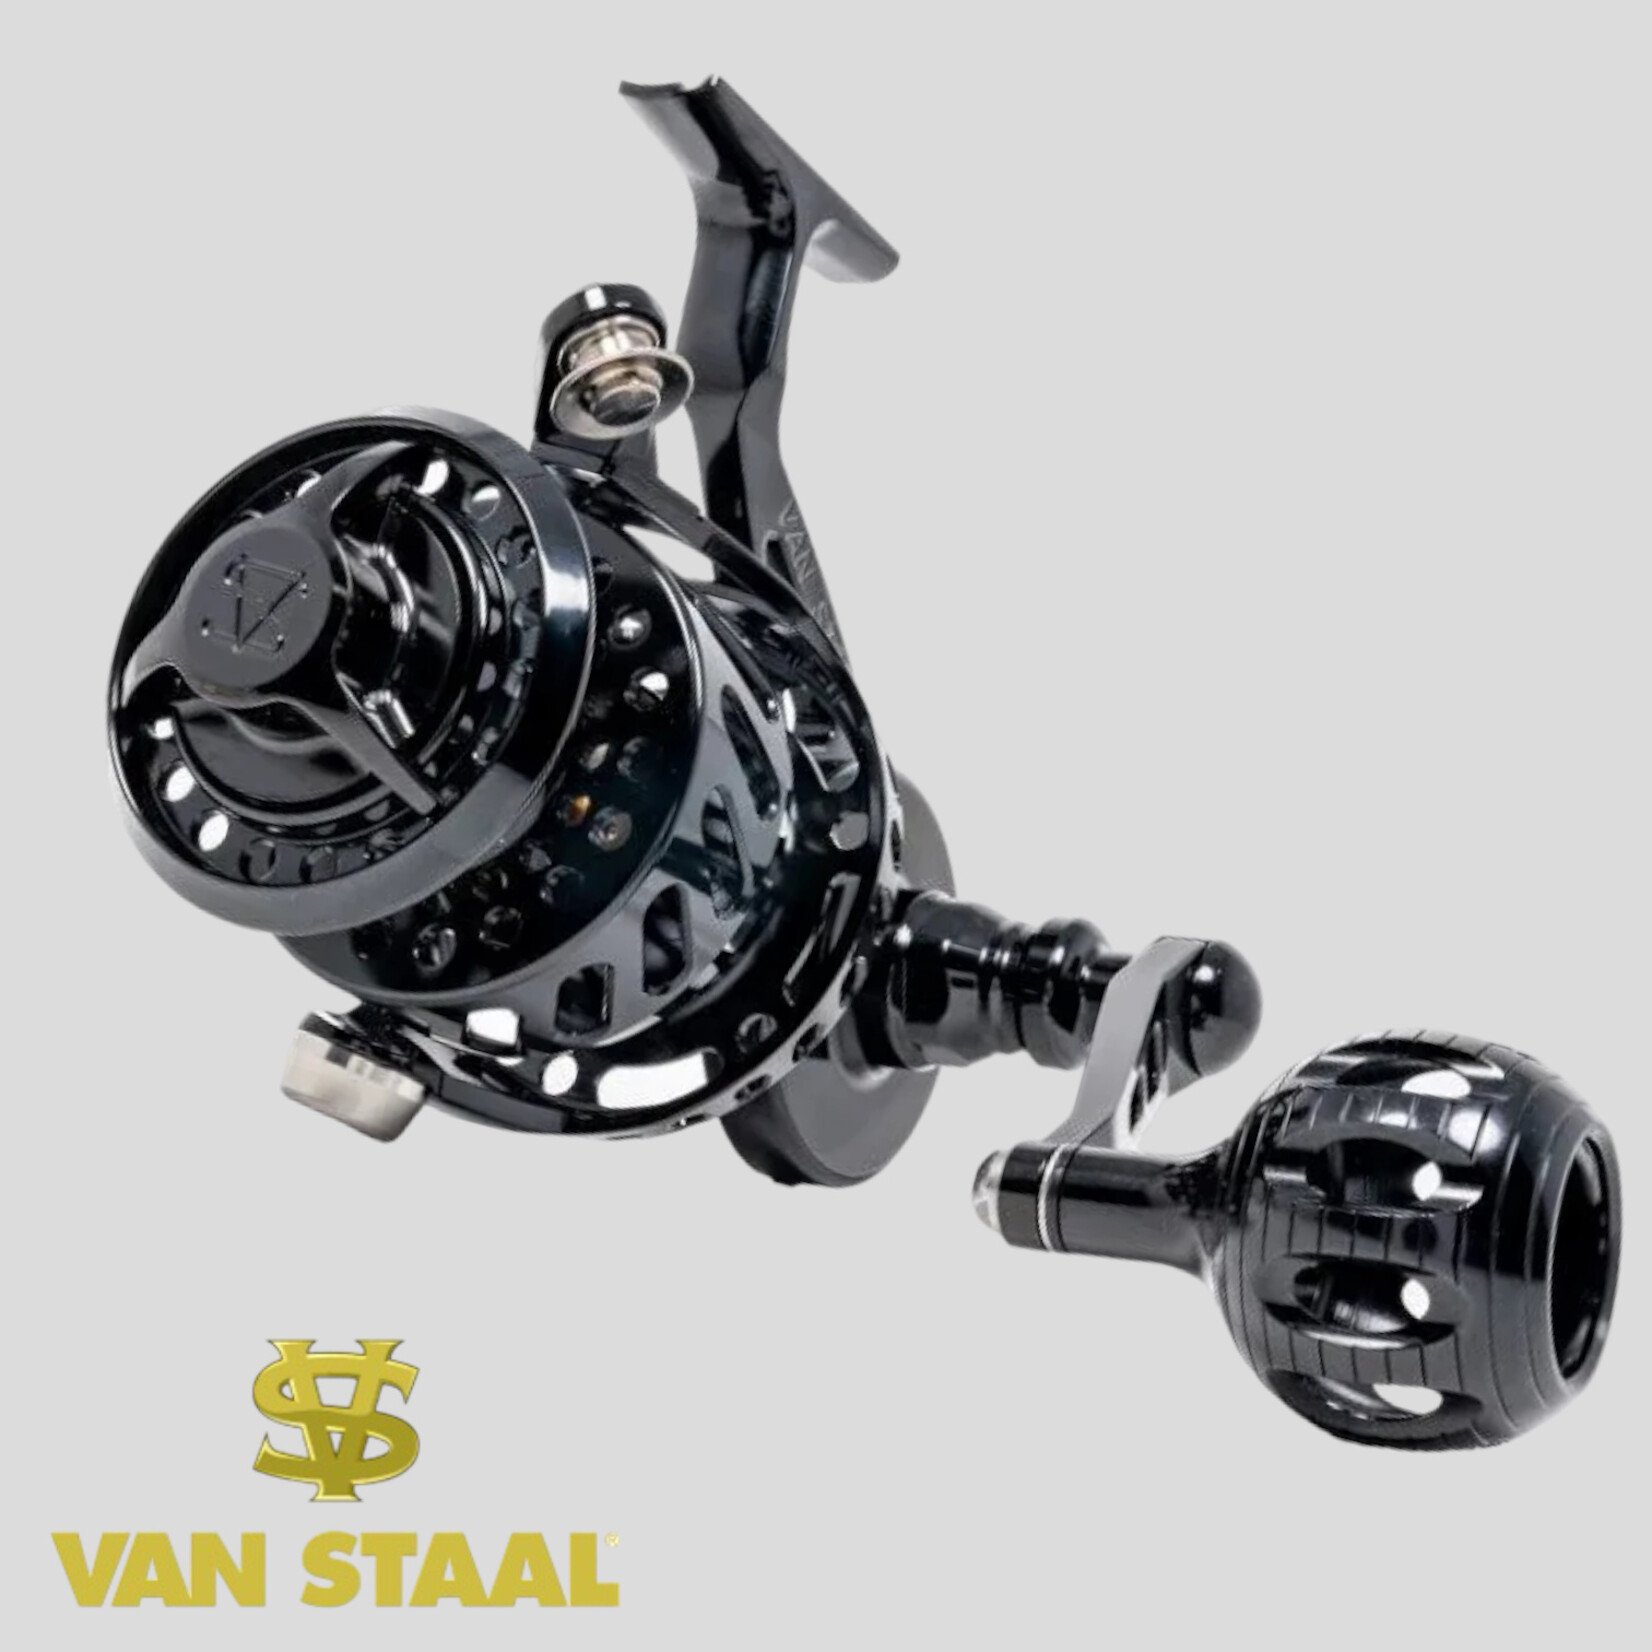 Van Staal Van Staal VSX2 Bail-less Spinning